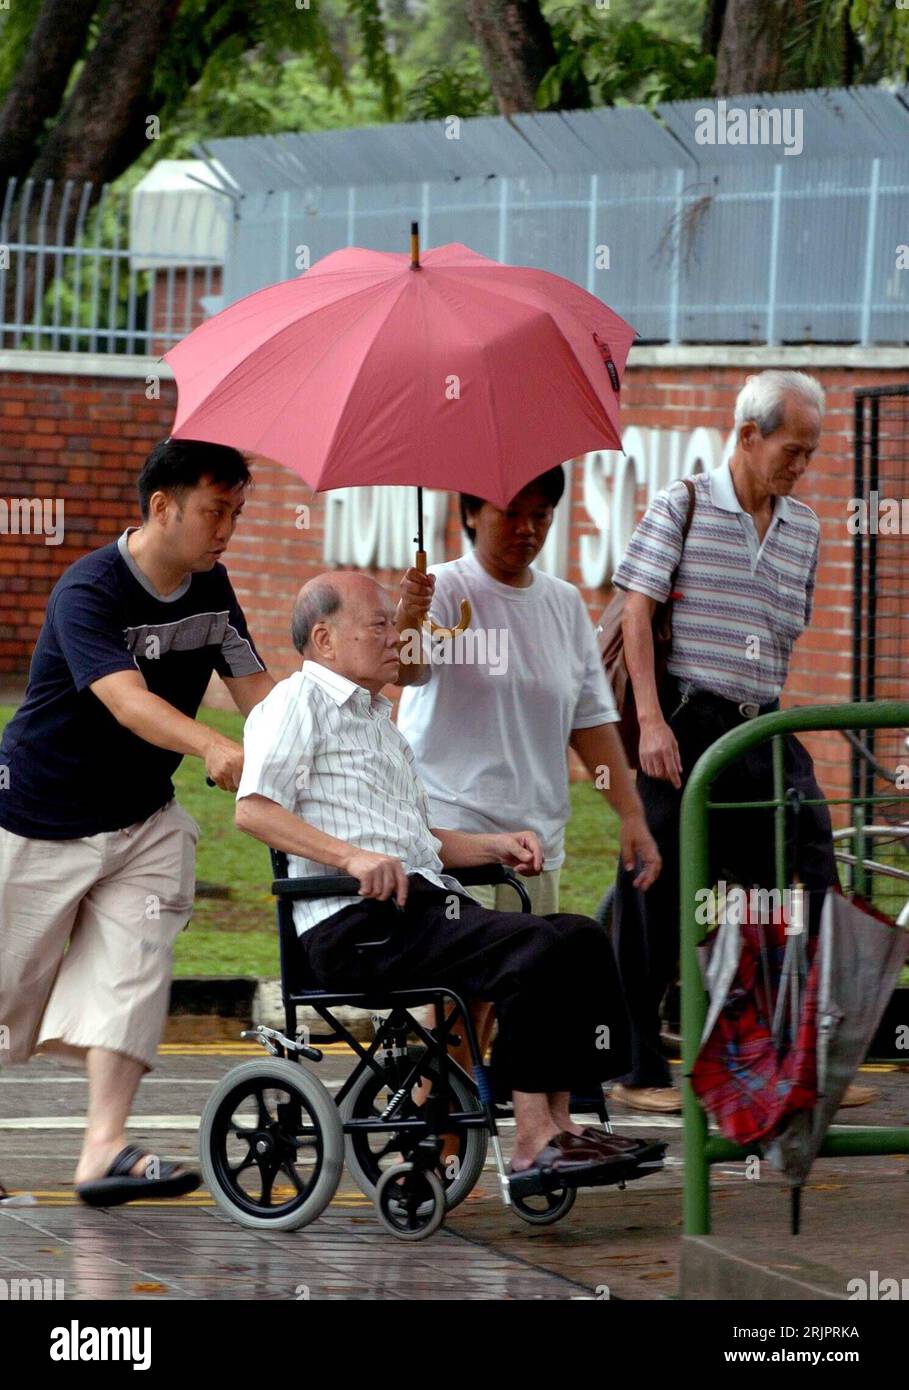 Bildnummer: 51227349 Datum: 06.05.2006 Copyright: imago/Xinhua Rollstuhlfahrer wird von seiner Familie durch den Regen in Singapur geschoben - PUBLICATIONxNOTxINxCHN, Personen; 2006, Singapur, , , , , , , Regenschirm, Regenschirme, Schirm, Schirme, Rollstuhlfahrer, Gehbehinderter, Gehbehinderte, Behinderter, Behinderte, , Rollstuhl, Rollstühle, Regen; , hoch, Kbdig, Gruppenbild, Singapur / Gehbehinderung, Pflege, Fürsorge, Familie, Wetter, Regenwetter, Mann, Männer, alter, alt, alte, senior, Senioren Foto Stock